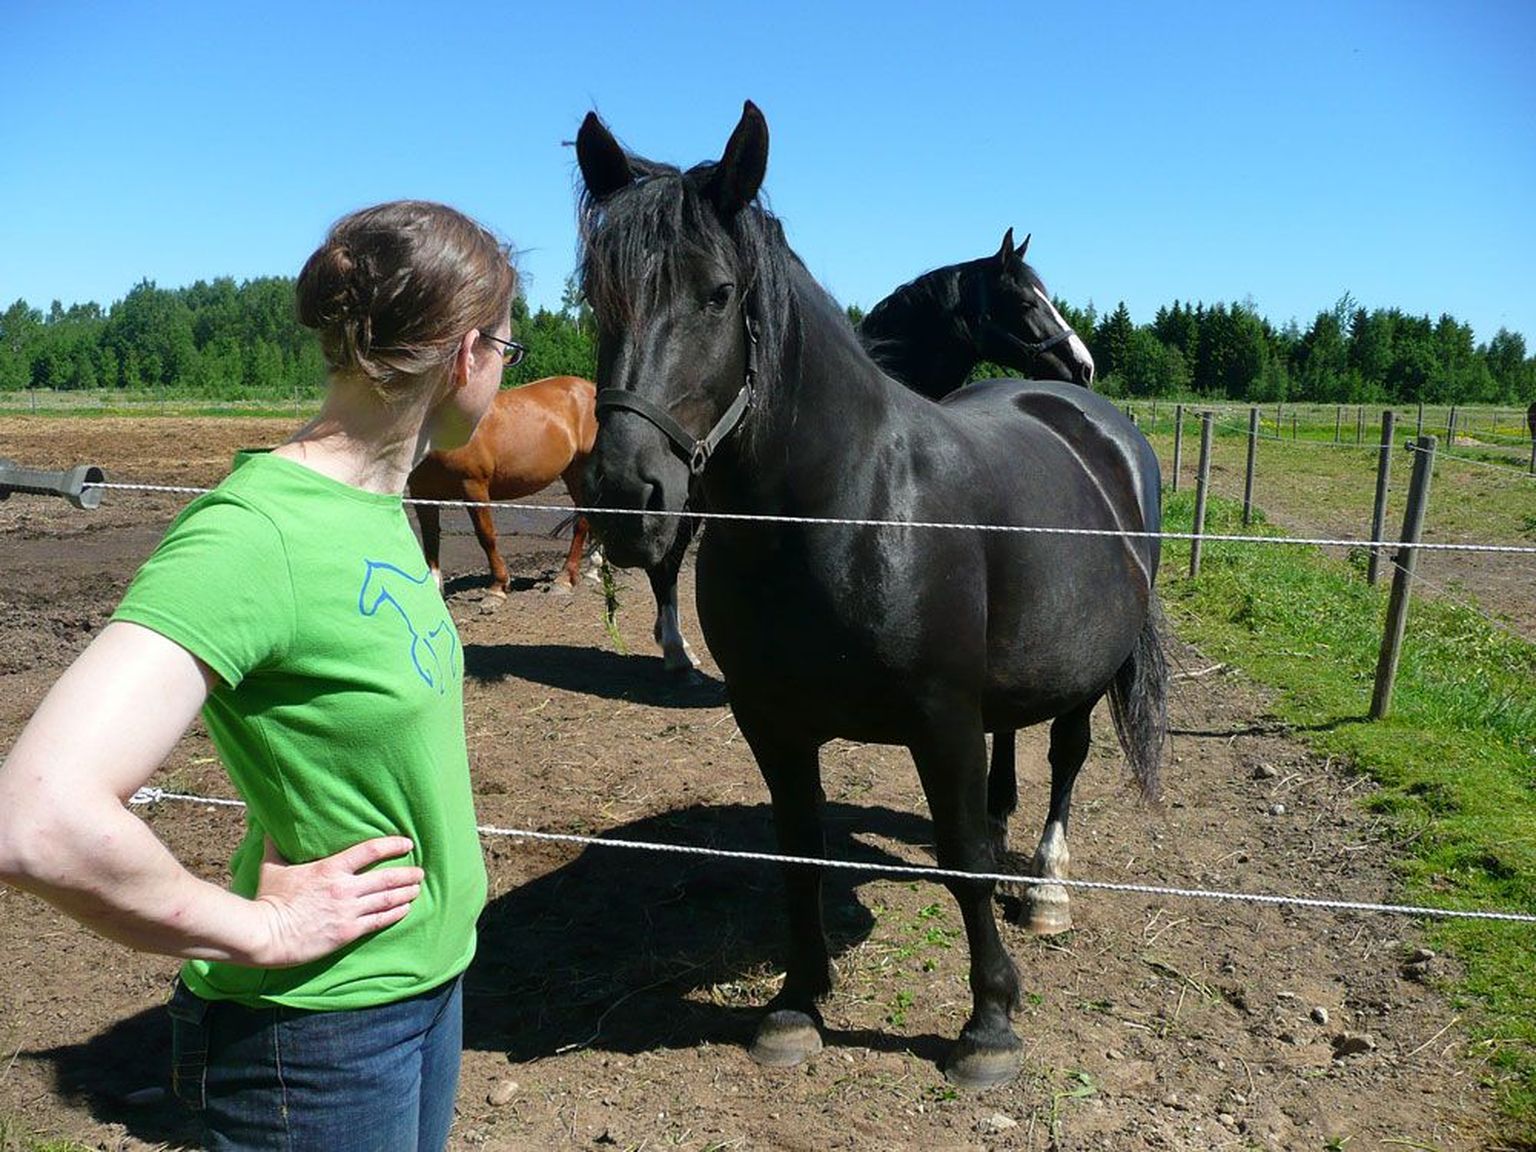 MTÜ Vana-Tori ­Hobuse ühing, mille juhatuse liige on ­aastaid Eestis elanud sakslanna Ute Wohlrab, taotleb tunnustust tori hobuse ­vana-tori suuna tõuraamatupidajana, ­millele teised hobusekasvatajad vastu ­seisavad.